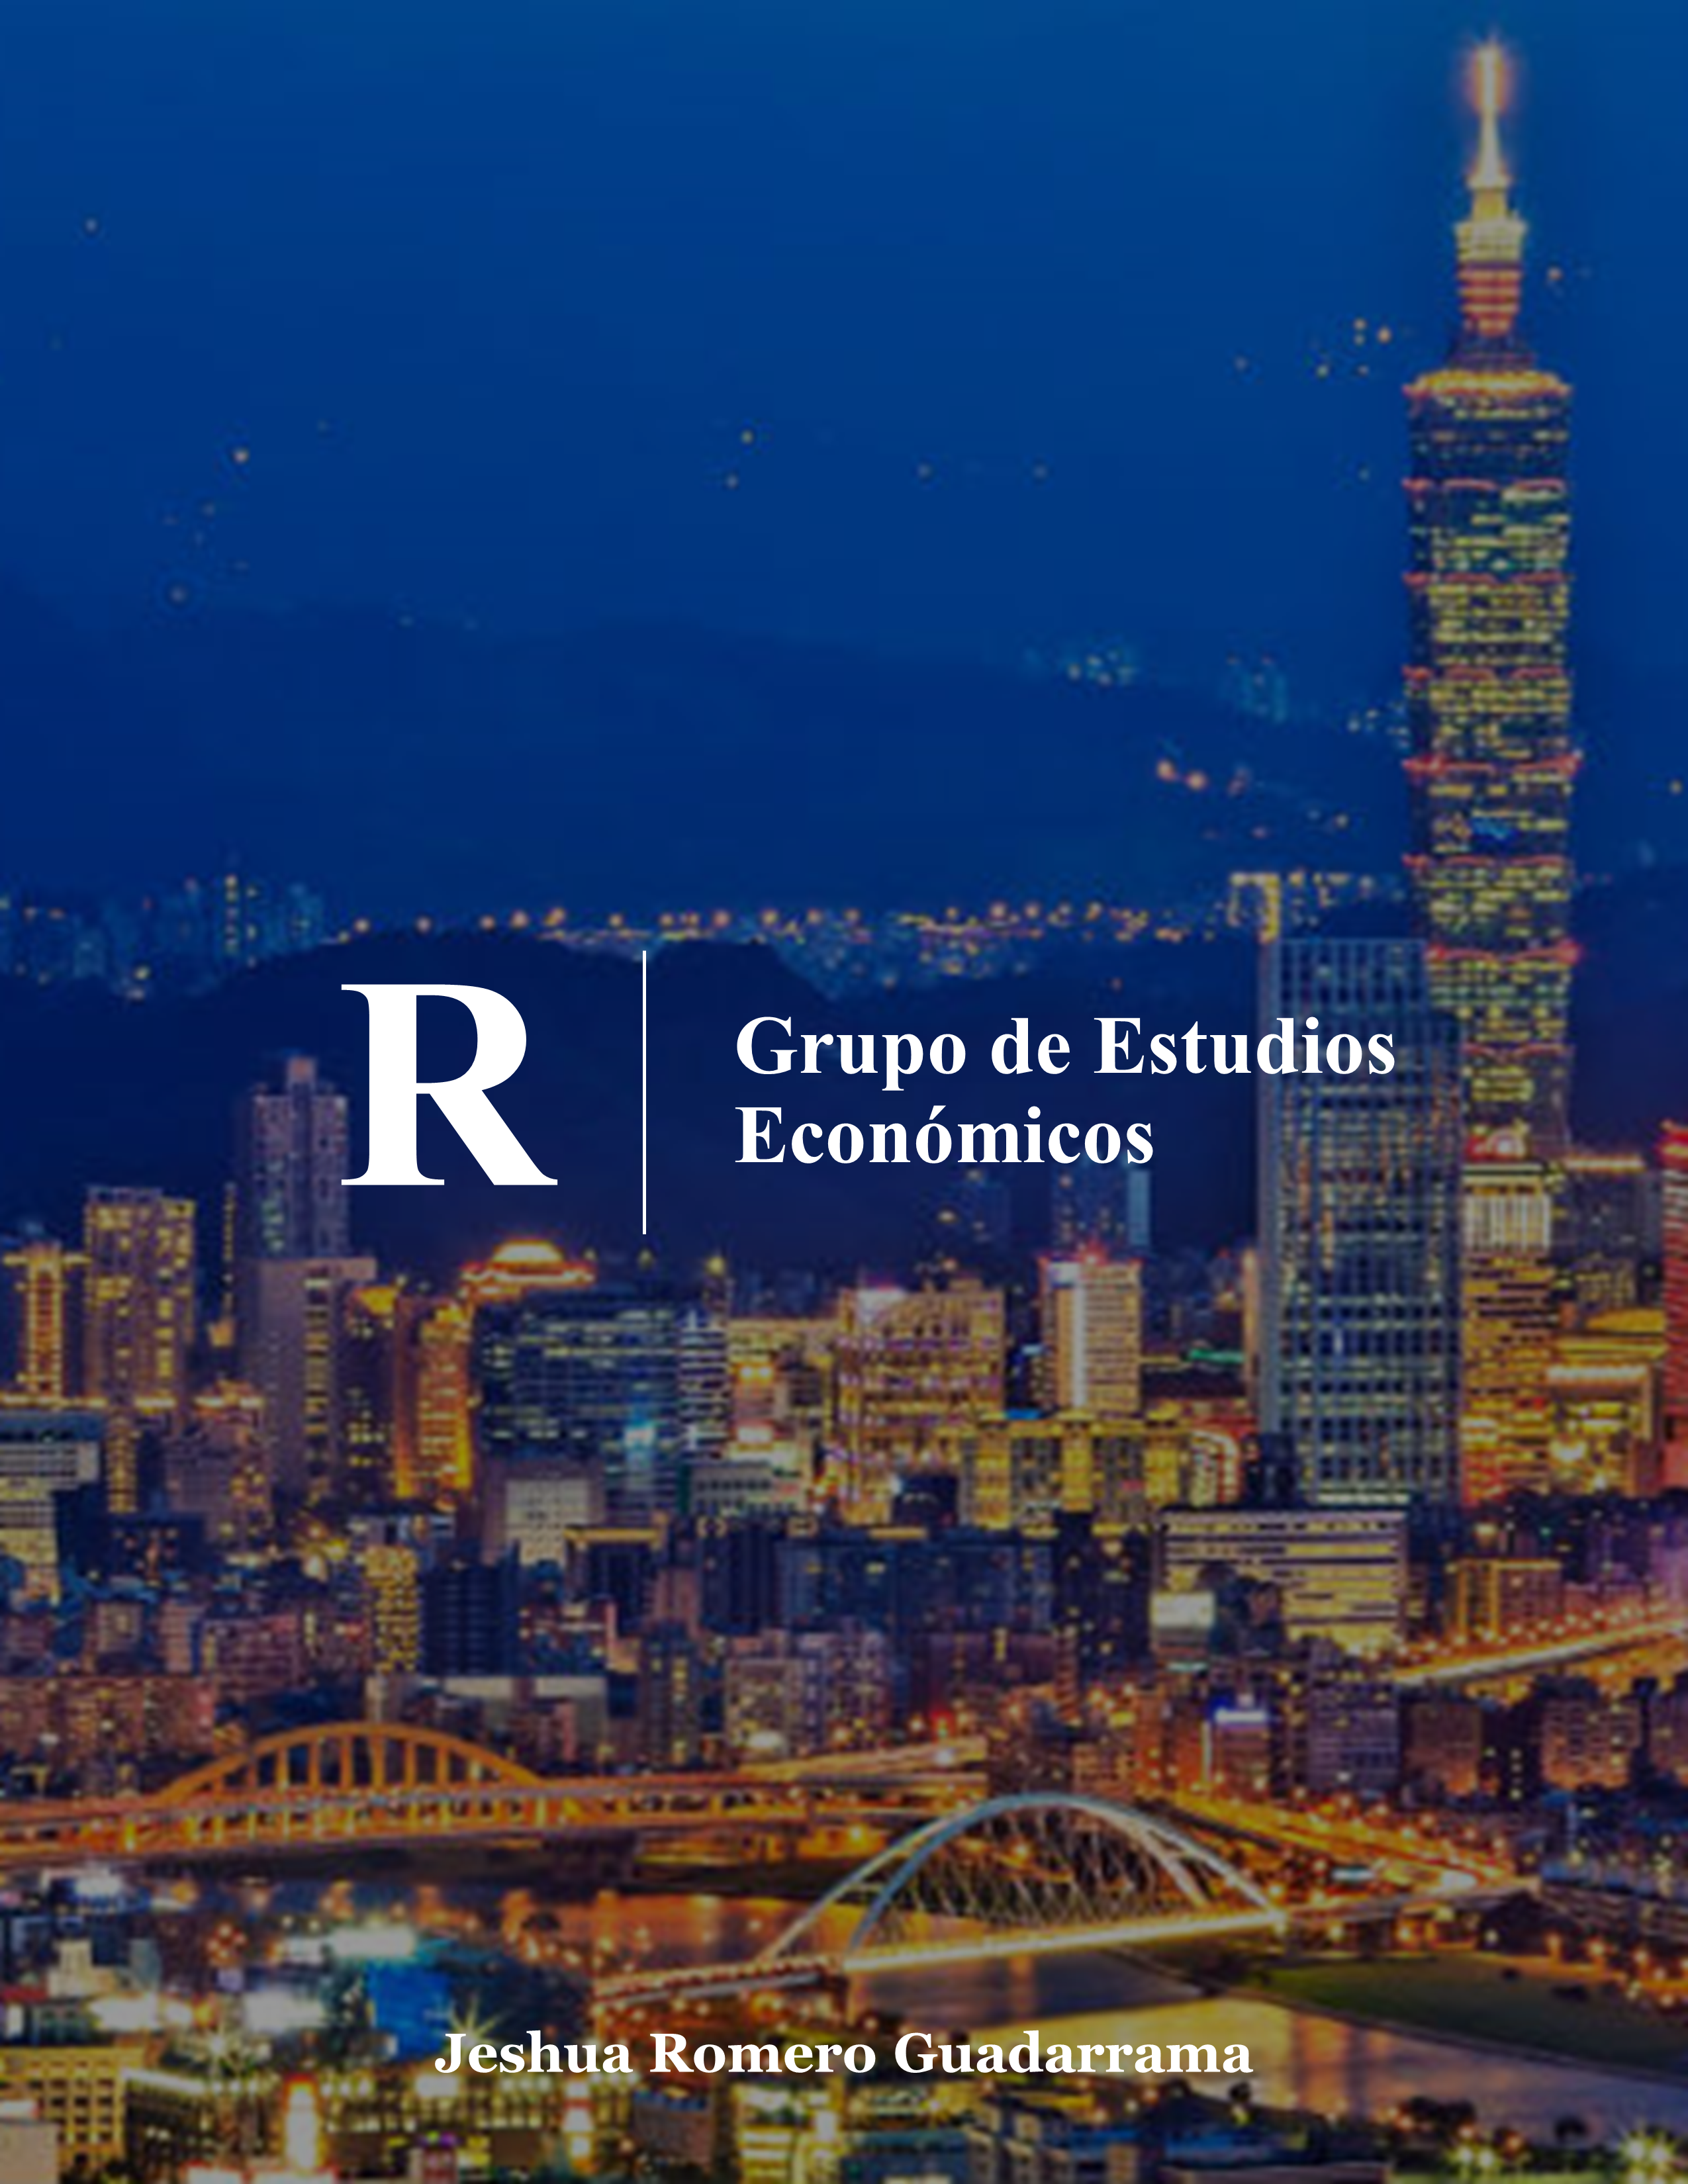 R_grupo_de_estudios_economicos.png